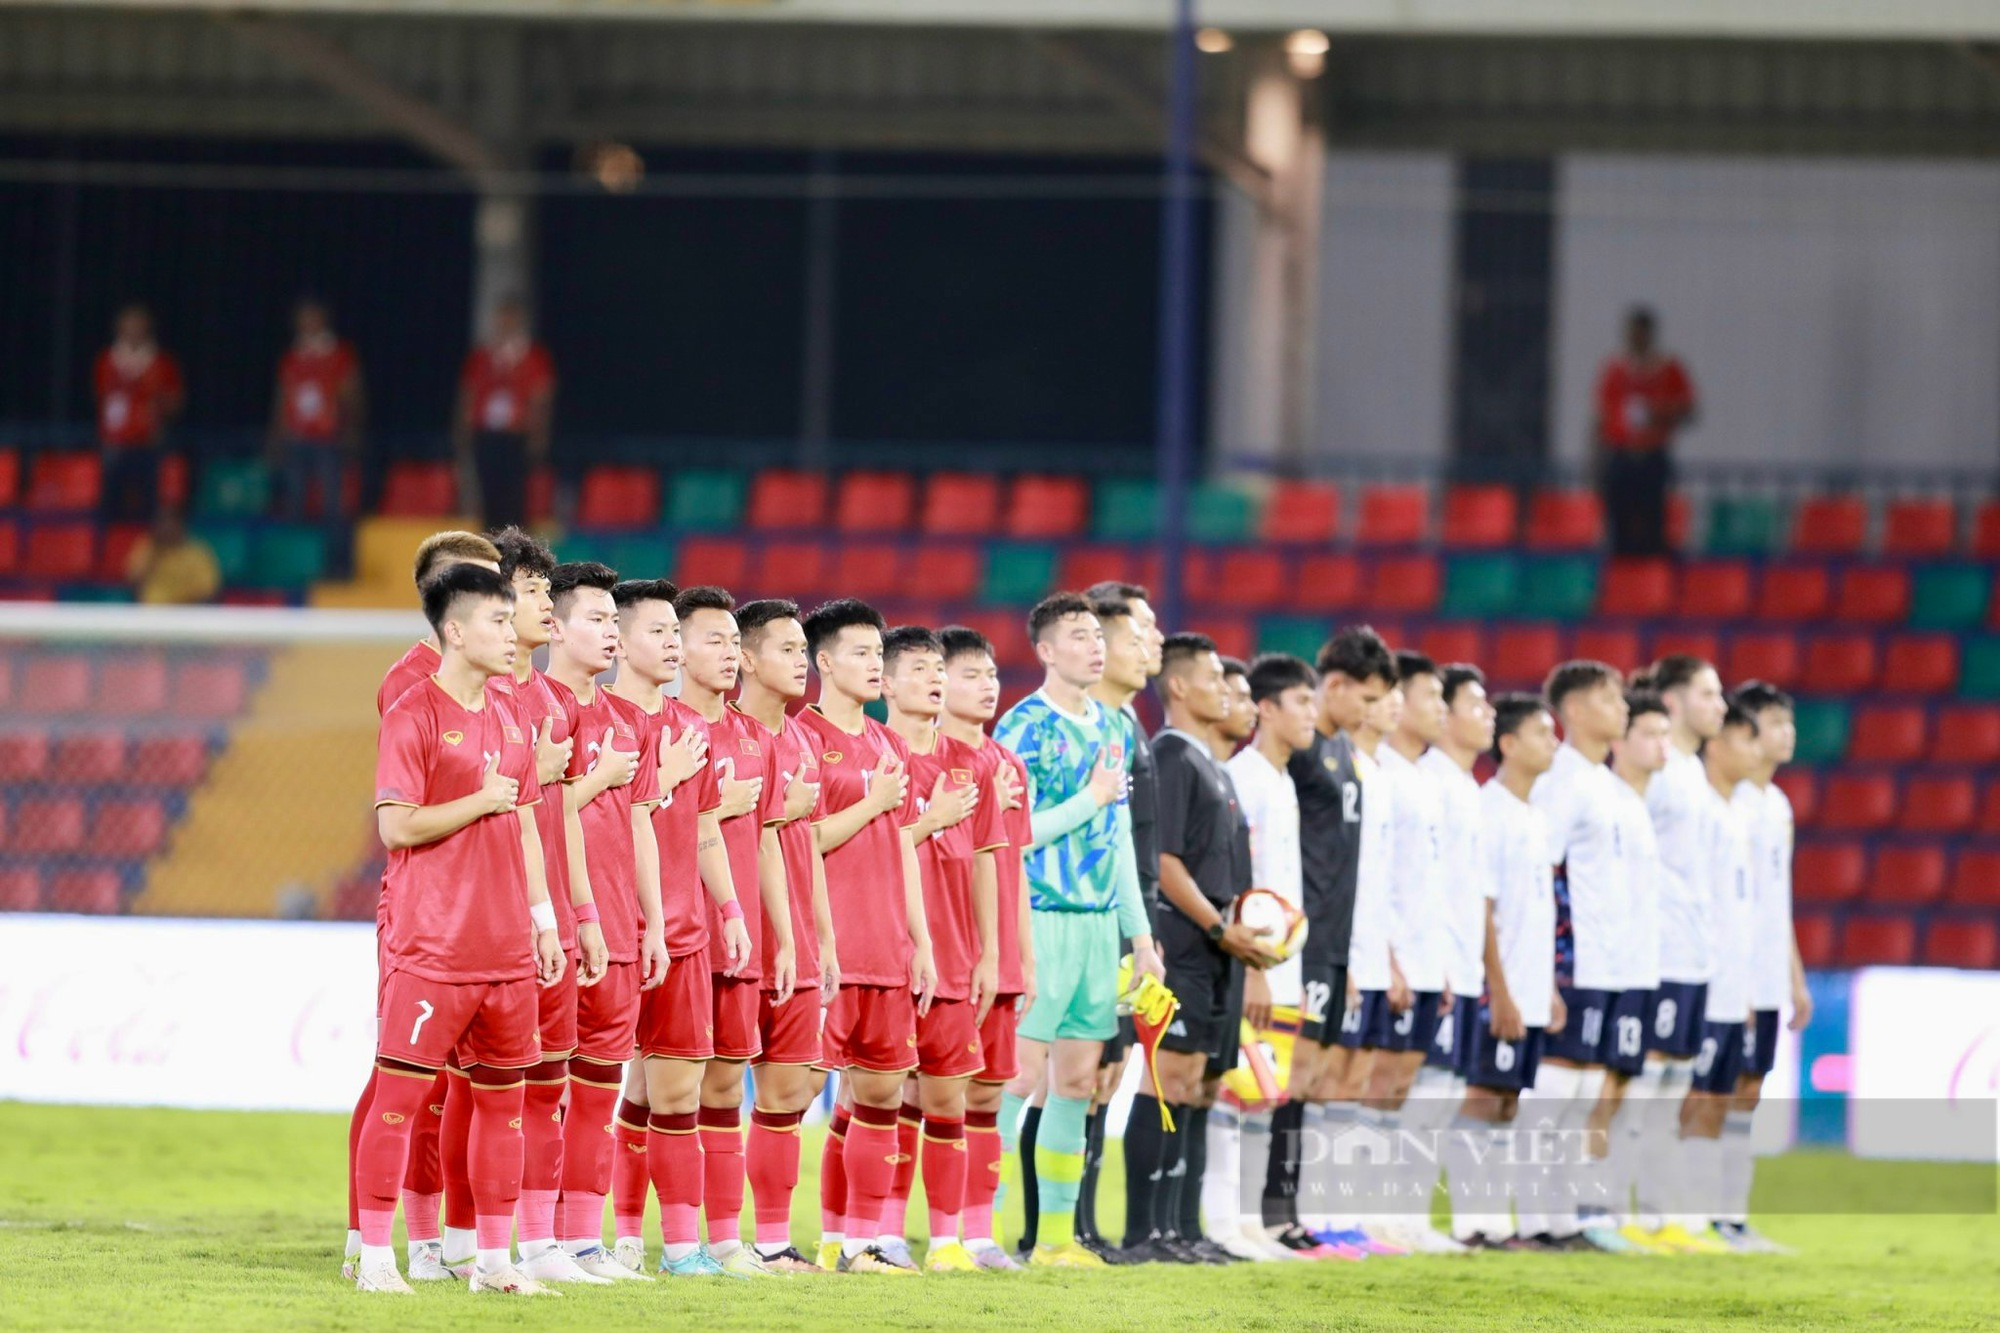 Quốc Việt ghi bàn nhân đôi tỉ số ở phút bù giờ U22 Việt Nam thắng Lào 2-0 - Ảnh 1.